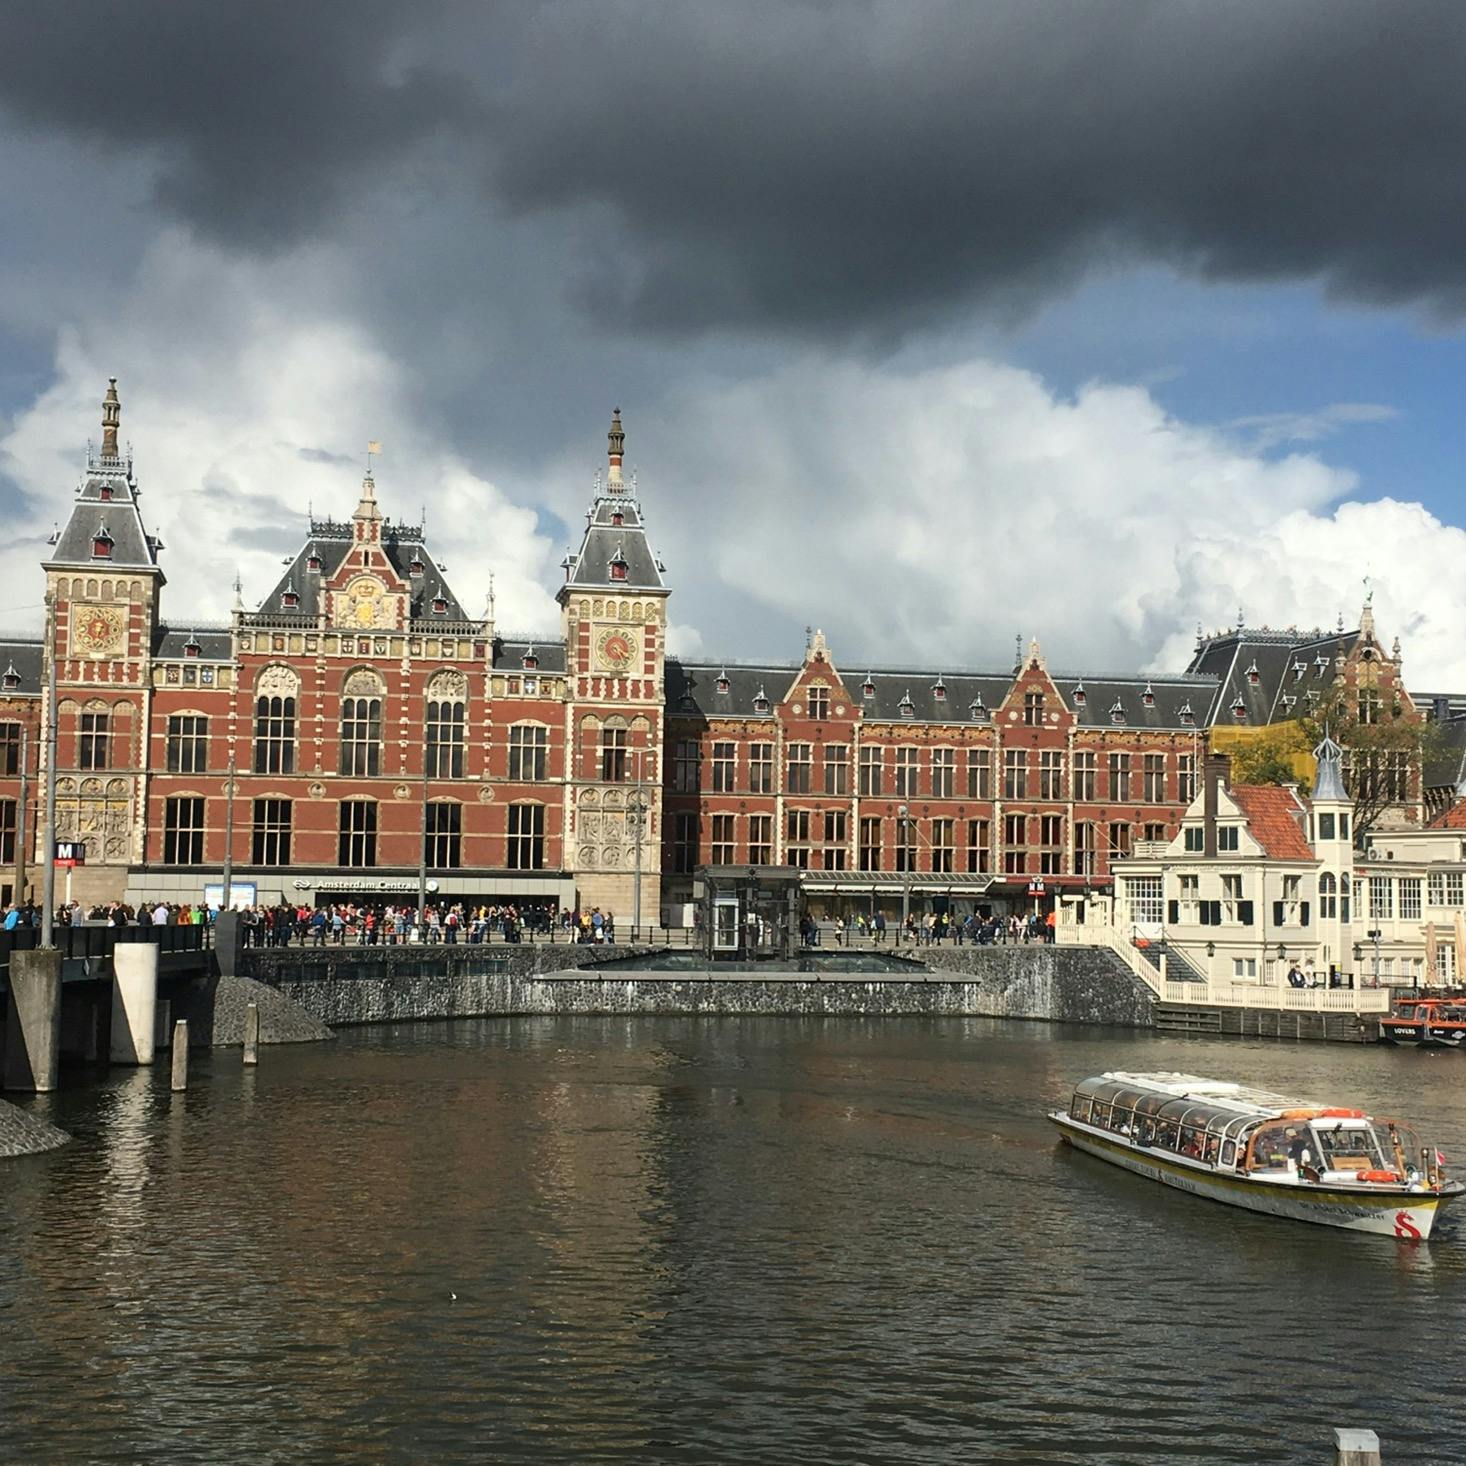 アムステルダム中央駅 Station Amsterdam Centraal の投稿写真 感想 みどころ オランダ アムステルダム中央駅東京 駅のモデルになった トリップノート